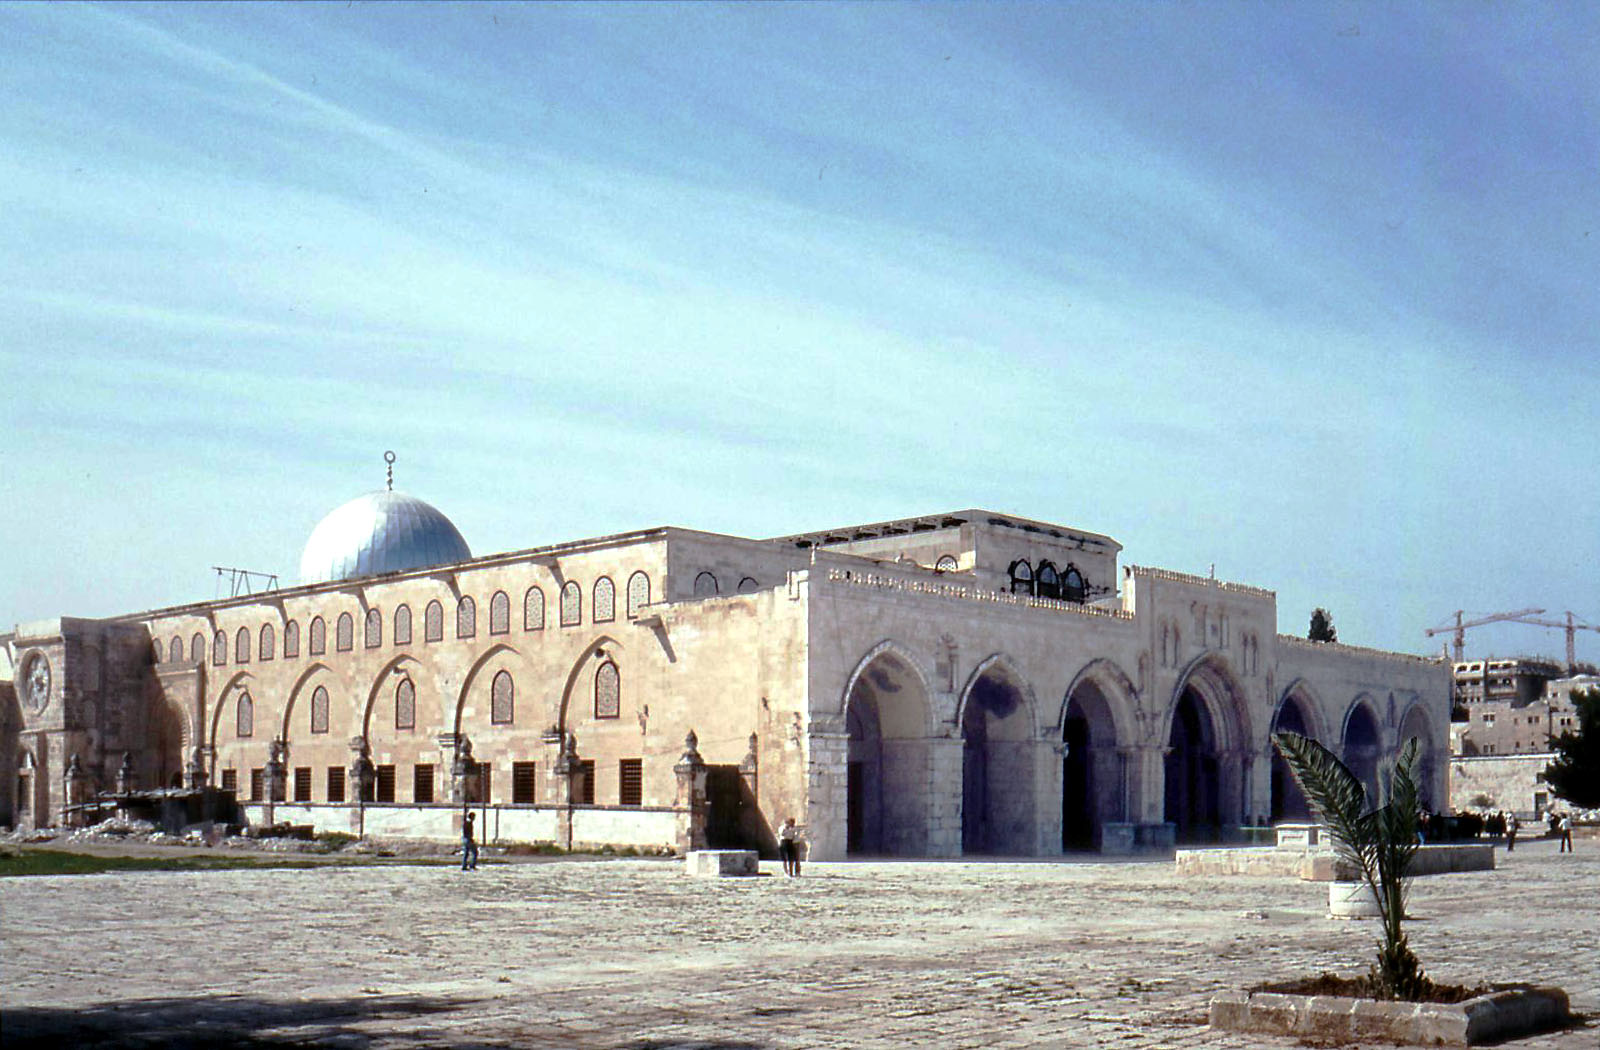 [Al_aqsa_mosque.jpg]